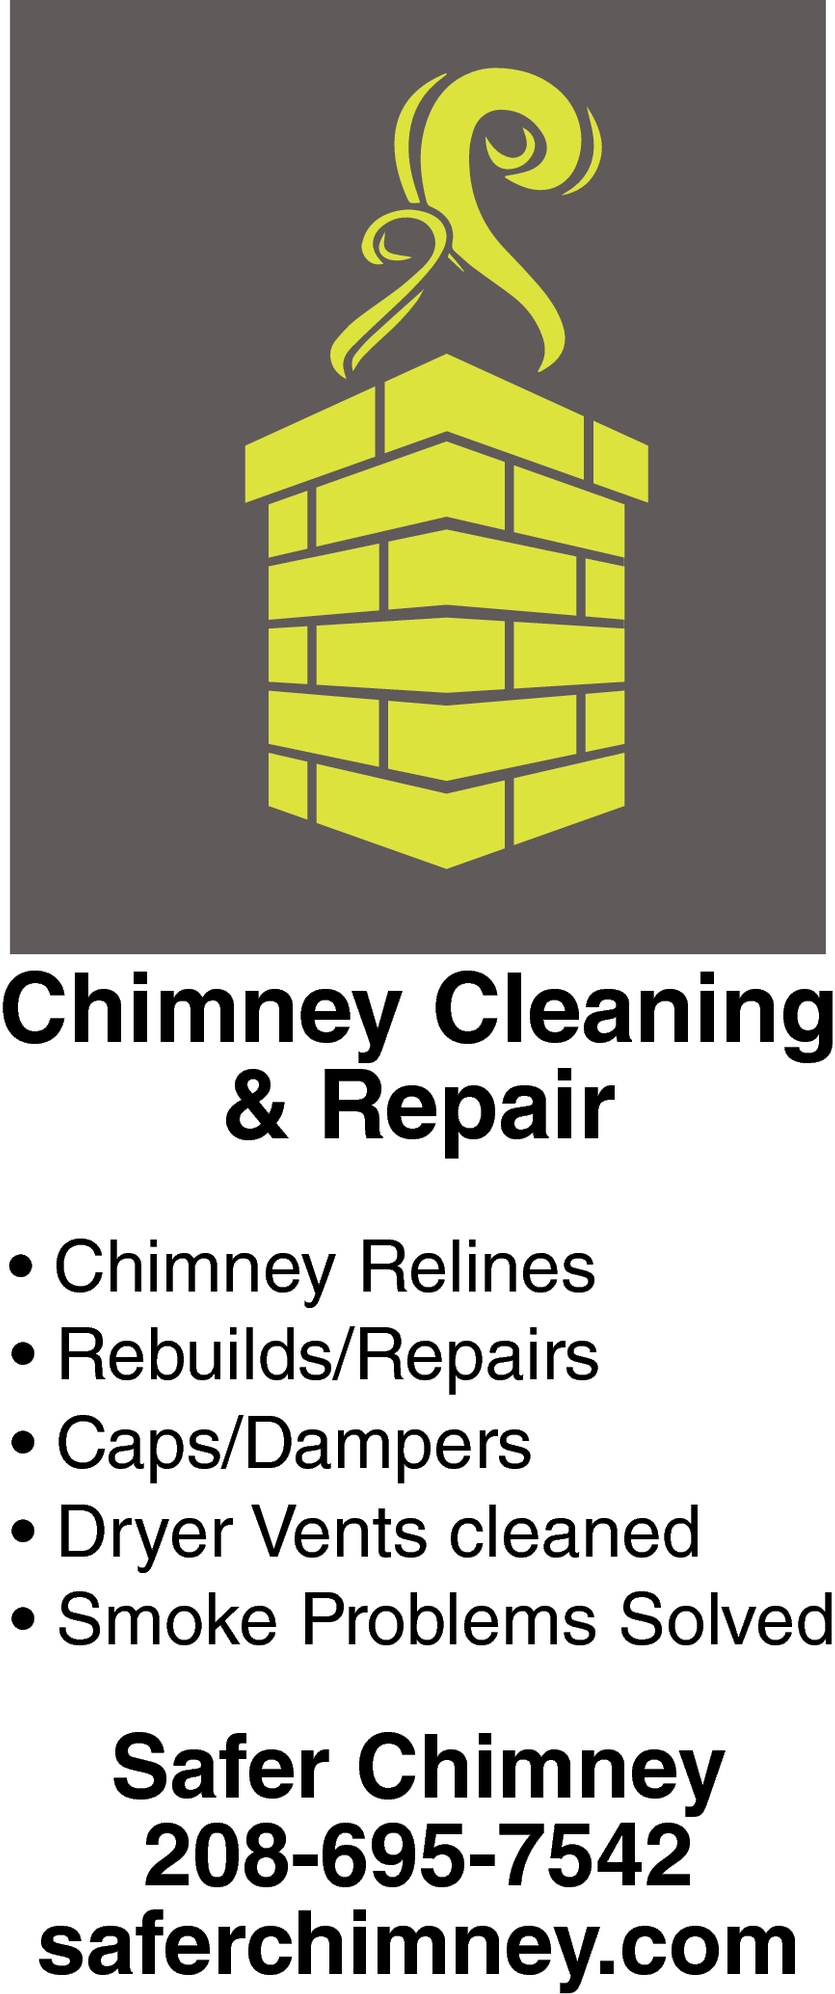 Chimney Cleaning & Repair